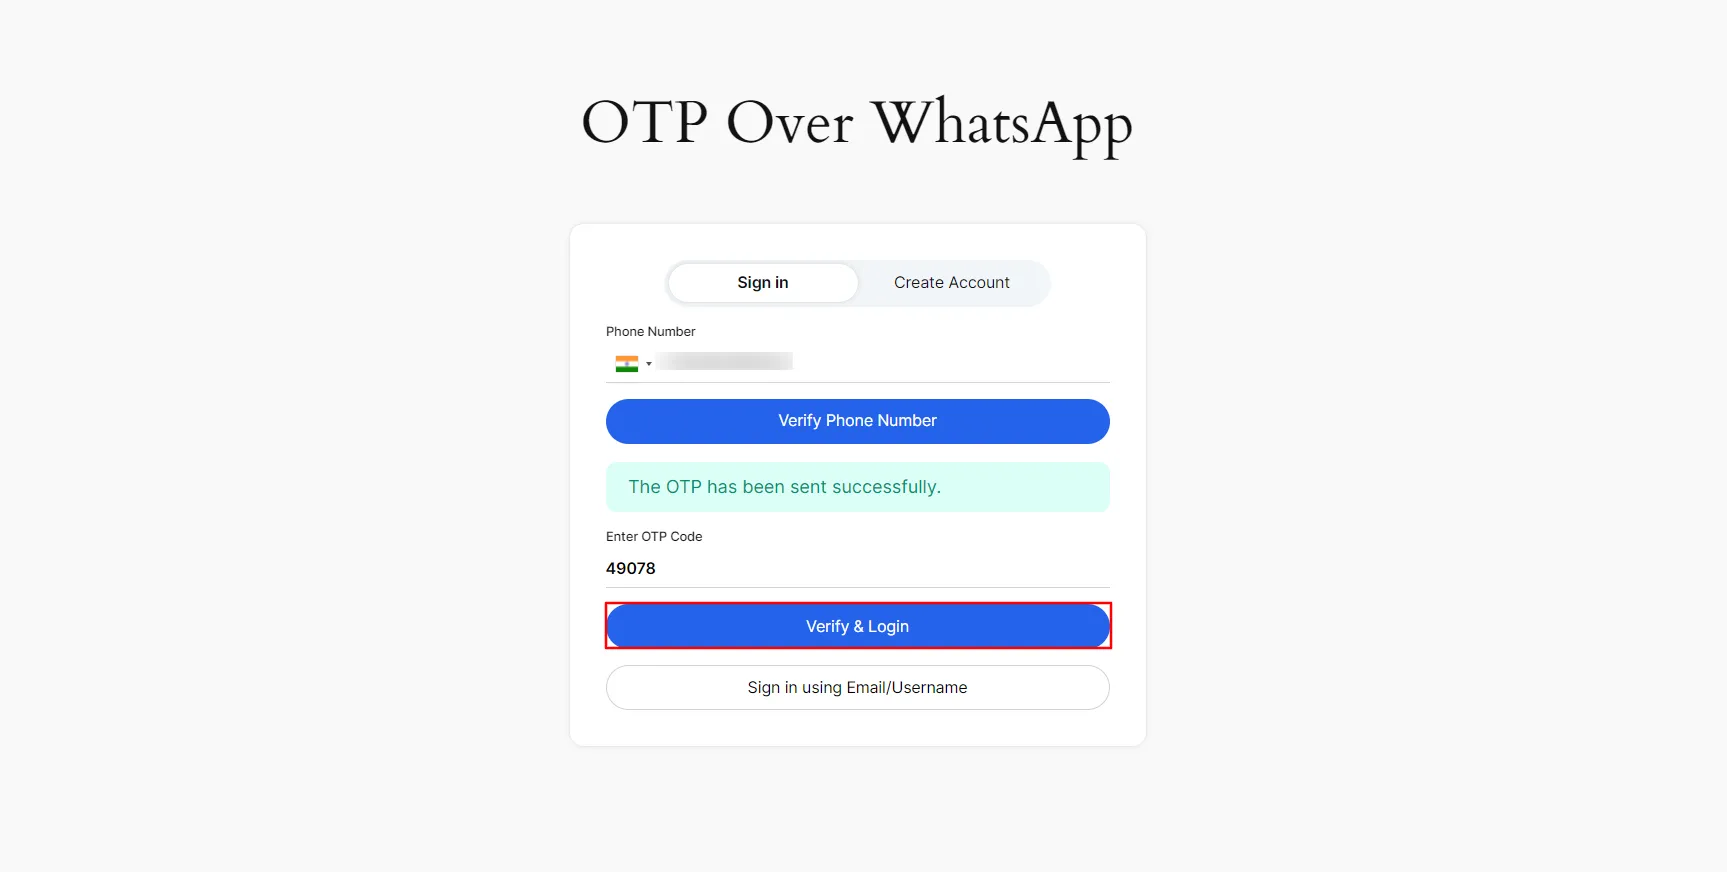 Iniciar sesión en WhatsApp con OTP - Ingrese un código válido